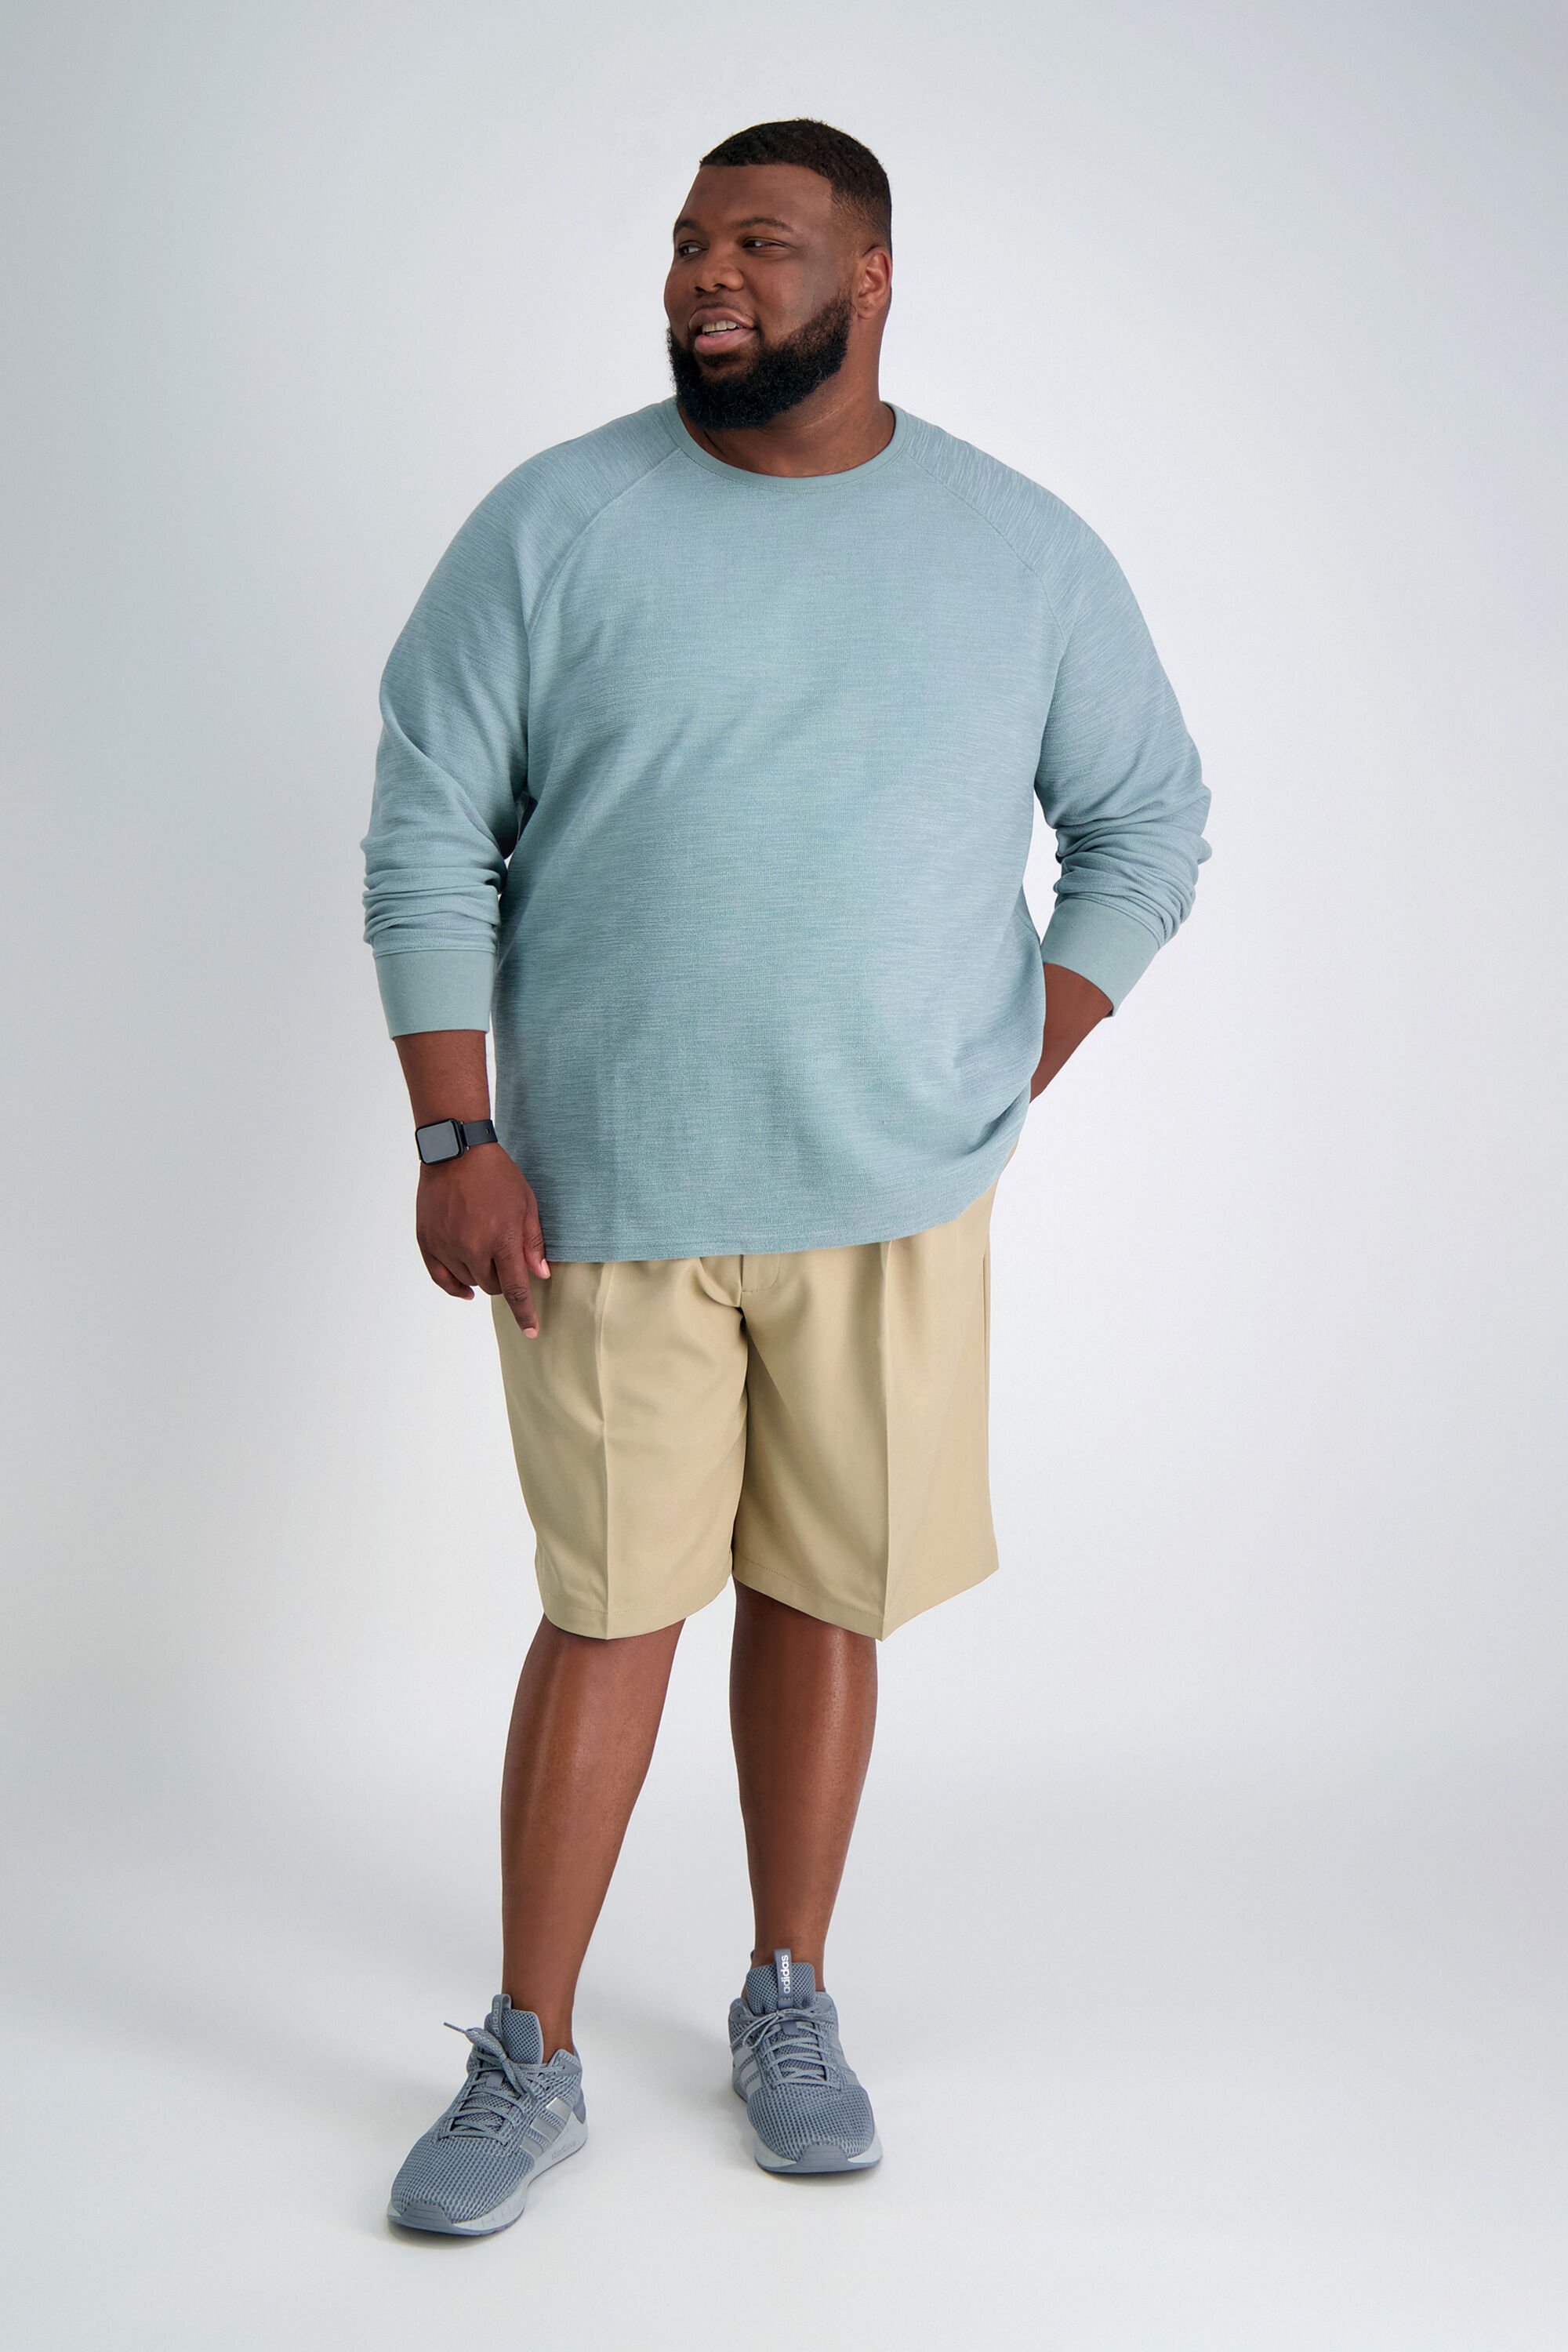 Men's Shorts: Khaki Dress Shorts, Casual Chinos & More | Haggar